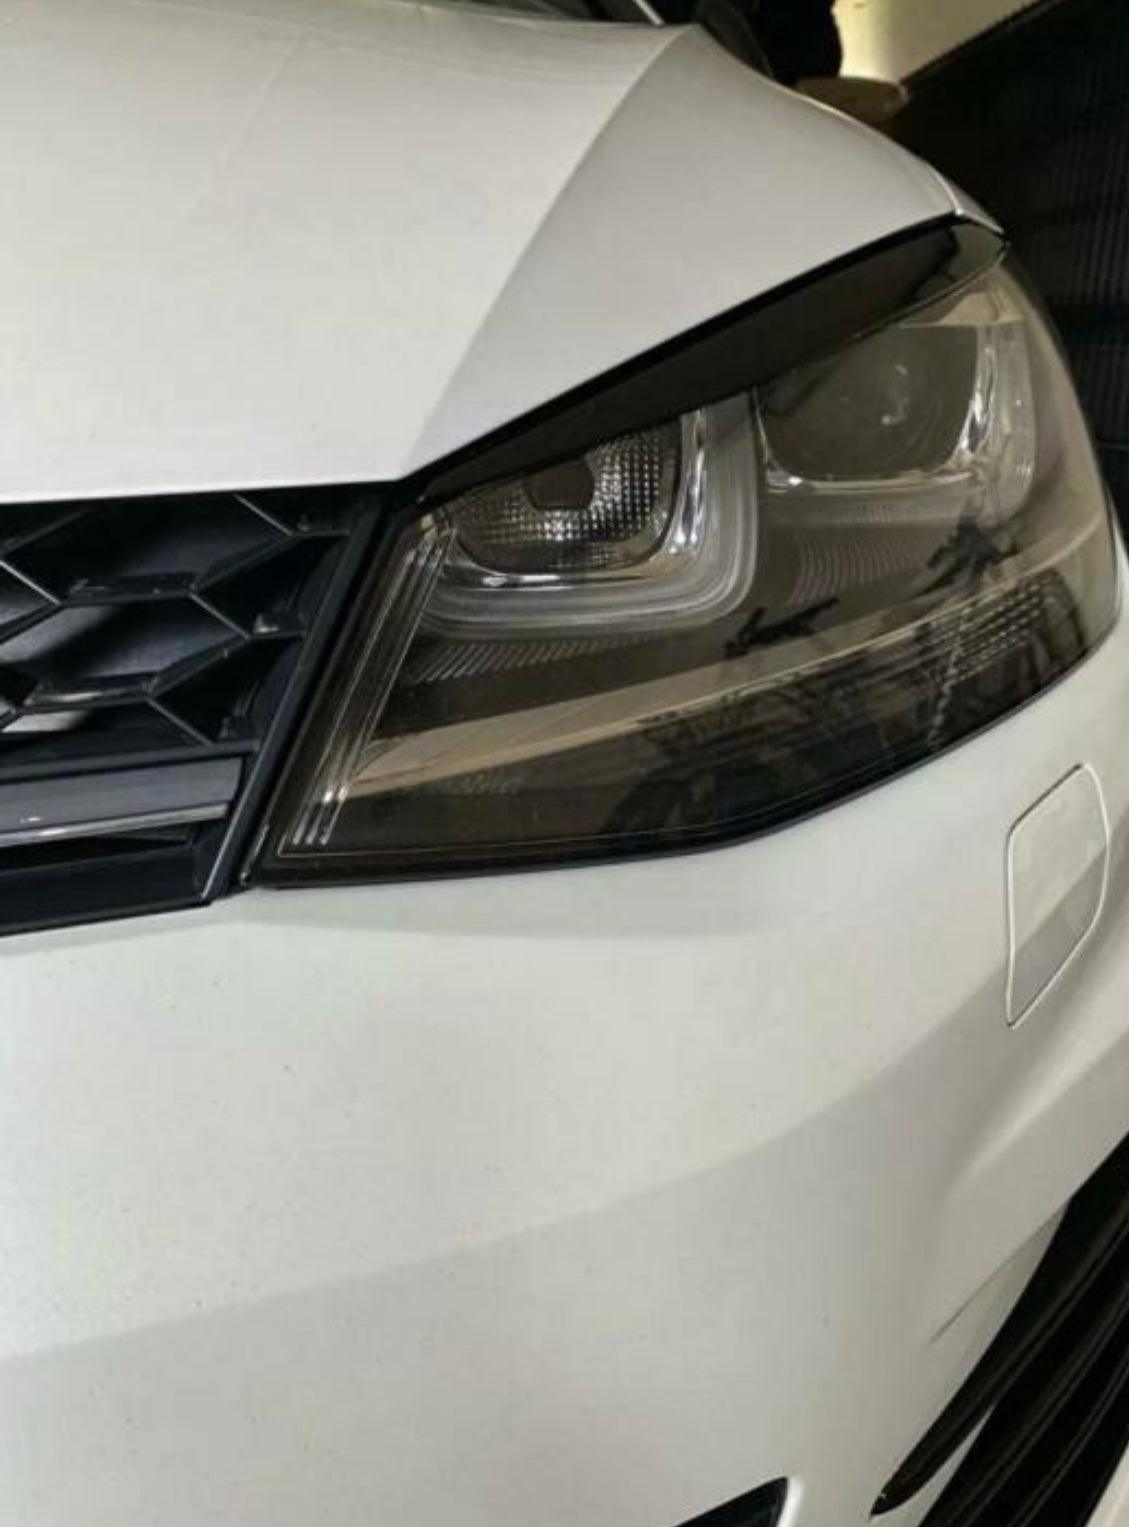 Volkswagen Golf 7 / 7.5 2013-2020 booskijkers wenkbrauw koplampen zwart glans